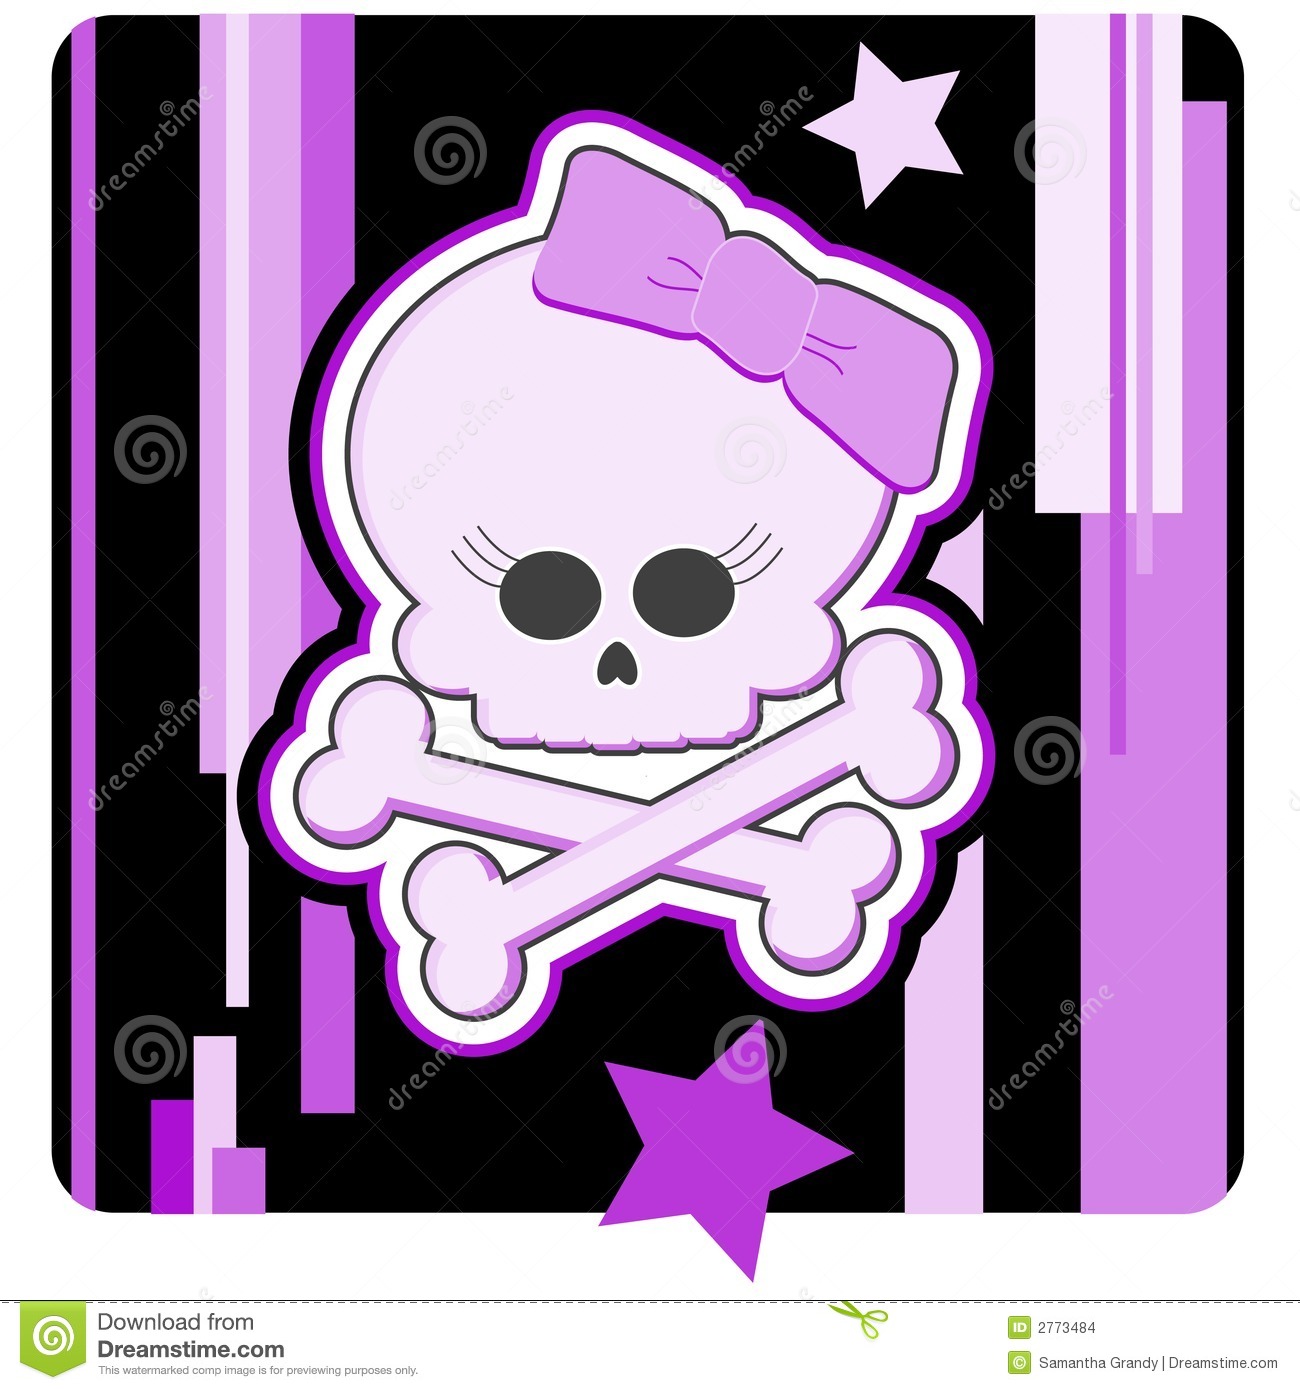 Cartoon Illustration Of A Girly Skull And Crossbones